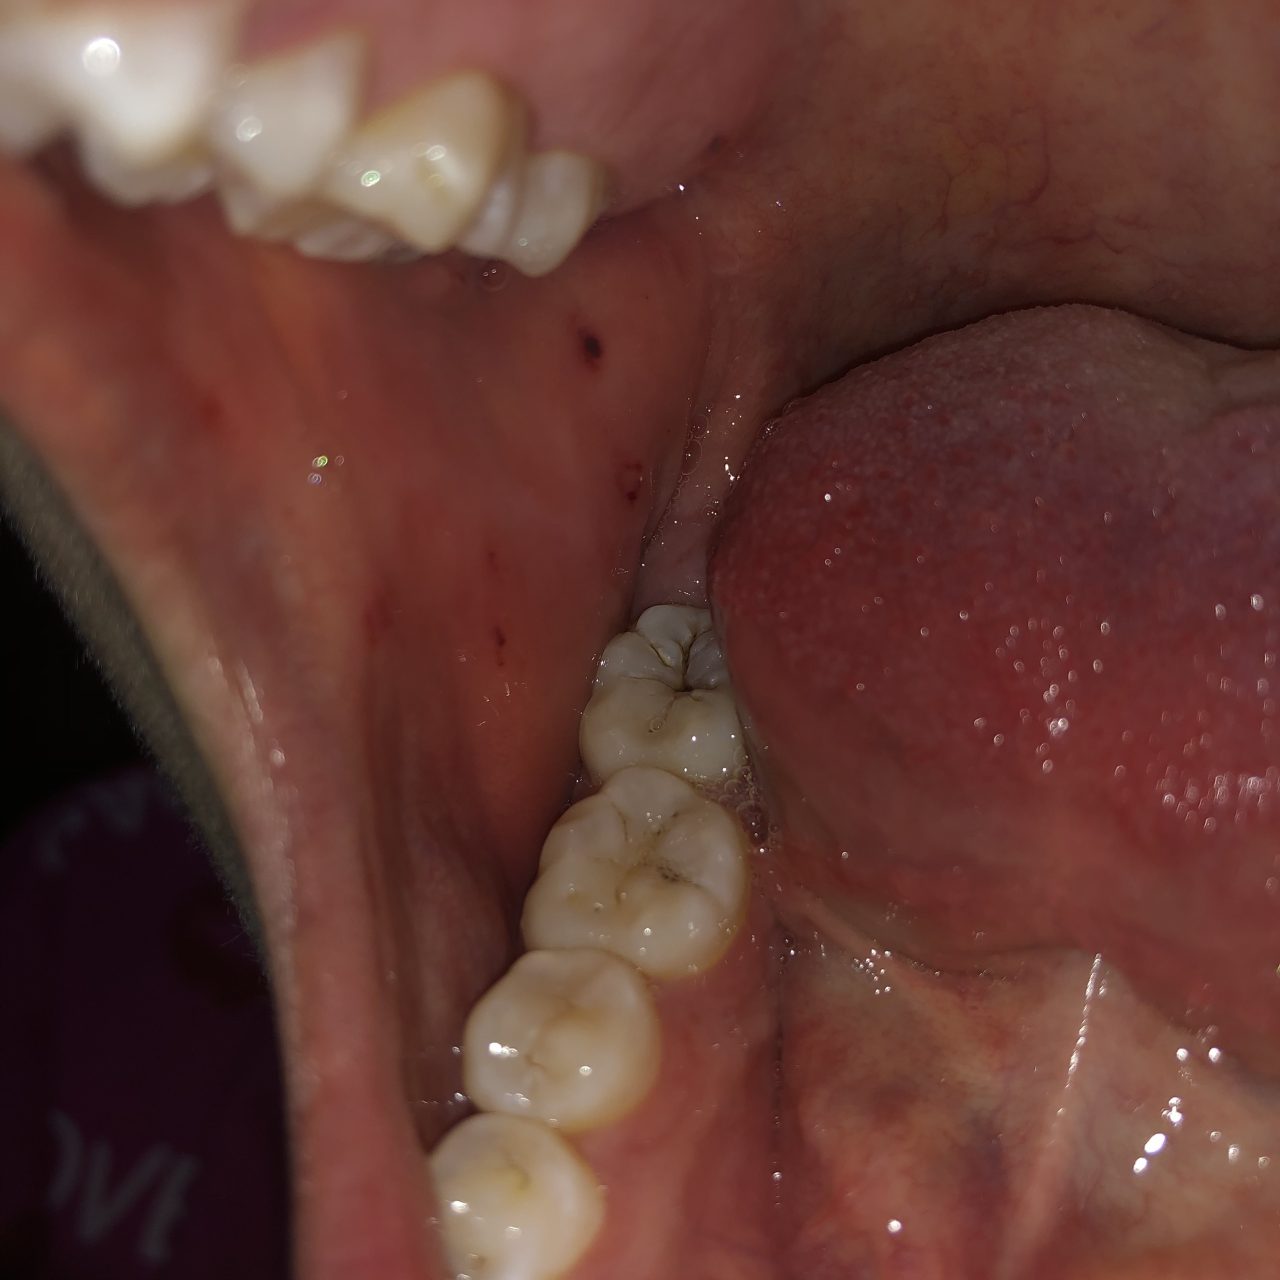  Viêm má trong miệng : Những điều mà bạn cần biết